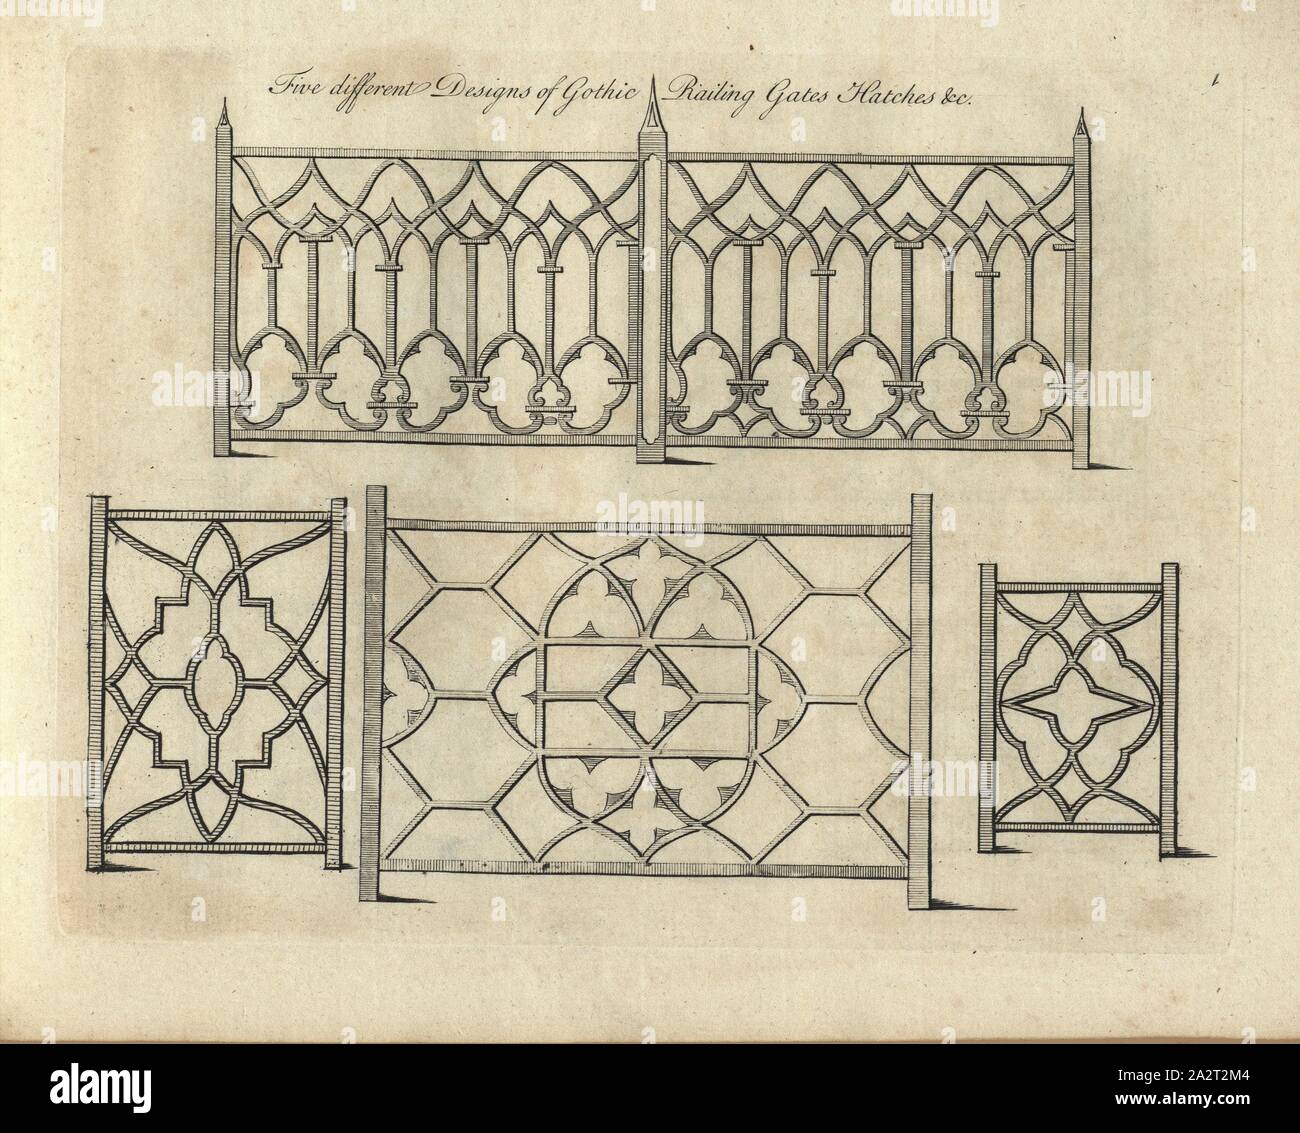 Cinq modèles différents de balustrade gothique Trappes Portes & c, gravure sur cuivre, gothique, fig. 2, 1759, P. Decker : [...] l'architecture chinoise. Londres : [s.n.], 1759 Banque D'Images